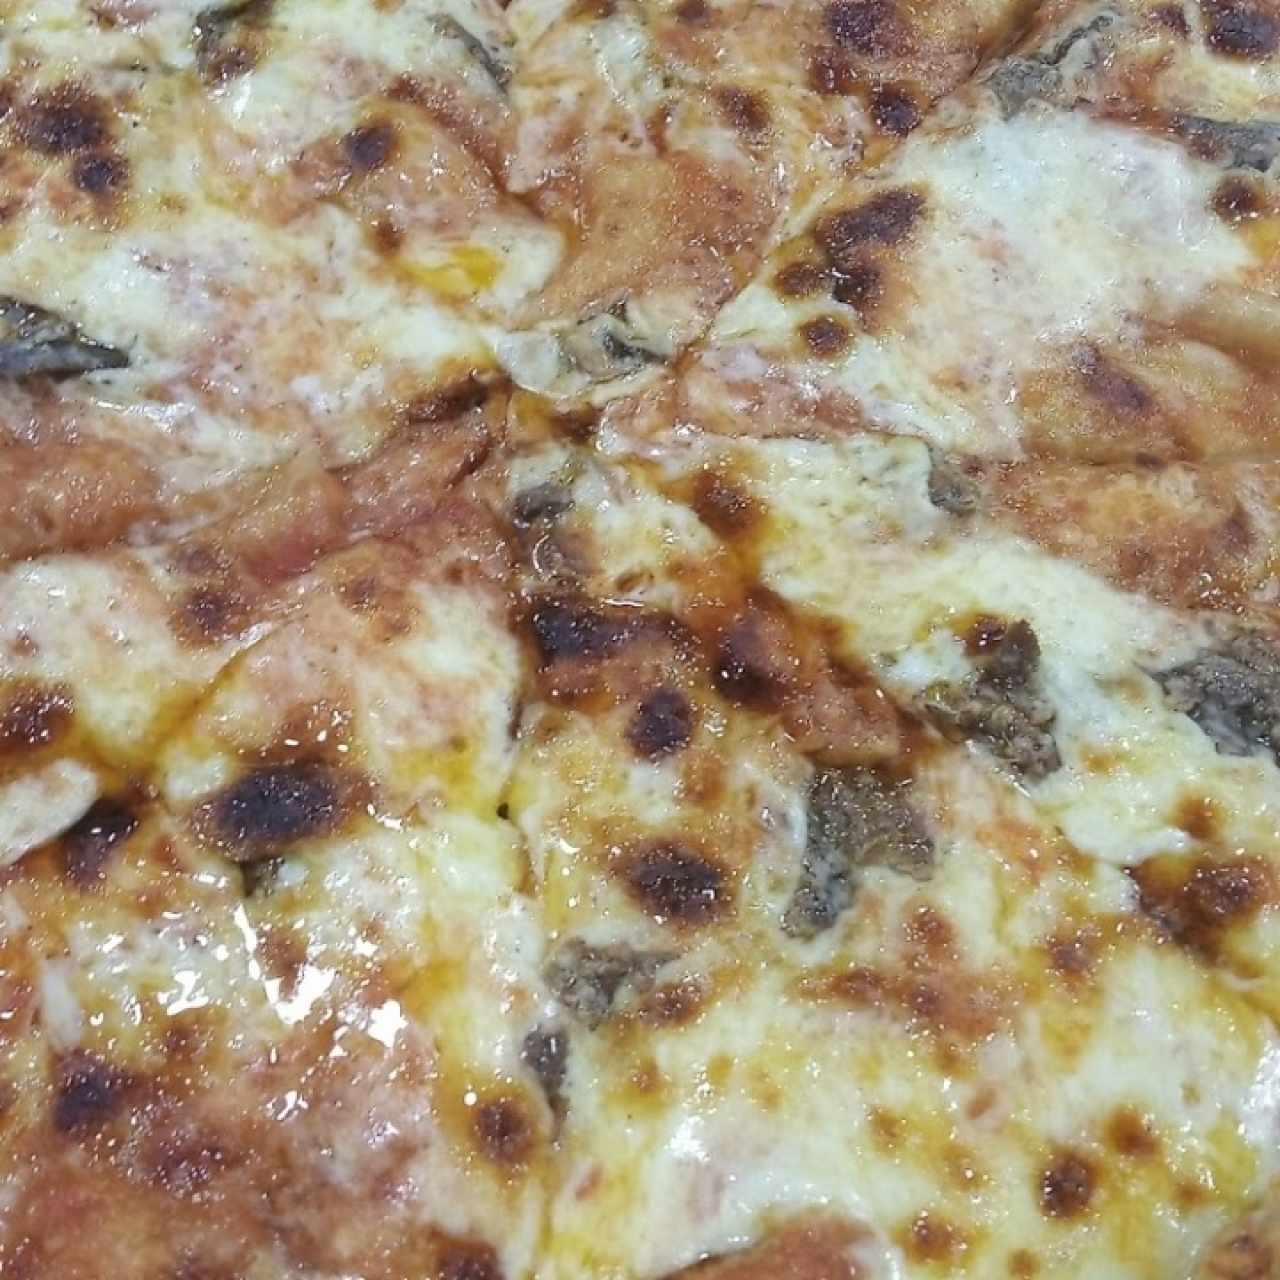 pizza de anchoas